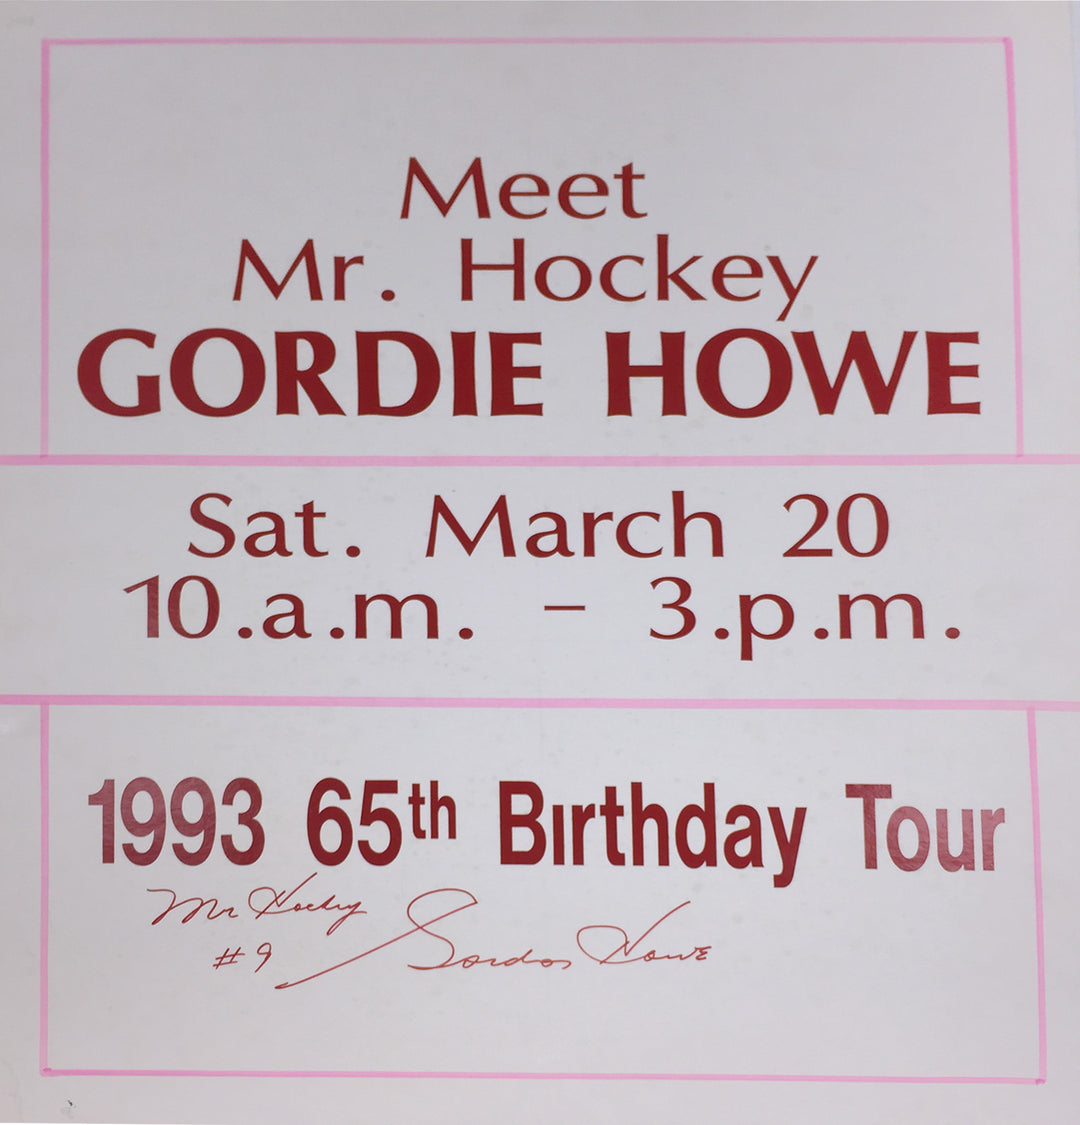 Gordie Howe "Mr. Hockey" Signed Vintage Sign Detroit Red Wings, Detroit Red Wings, NHL, Hockey, Autographed, Signed, AAVSH31852